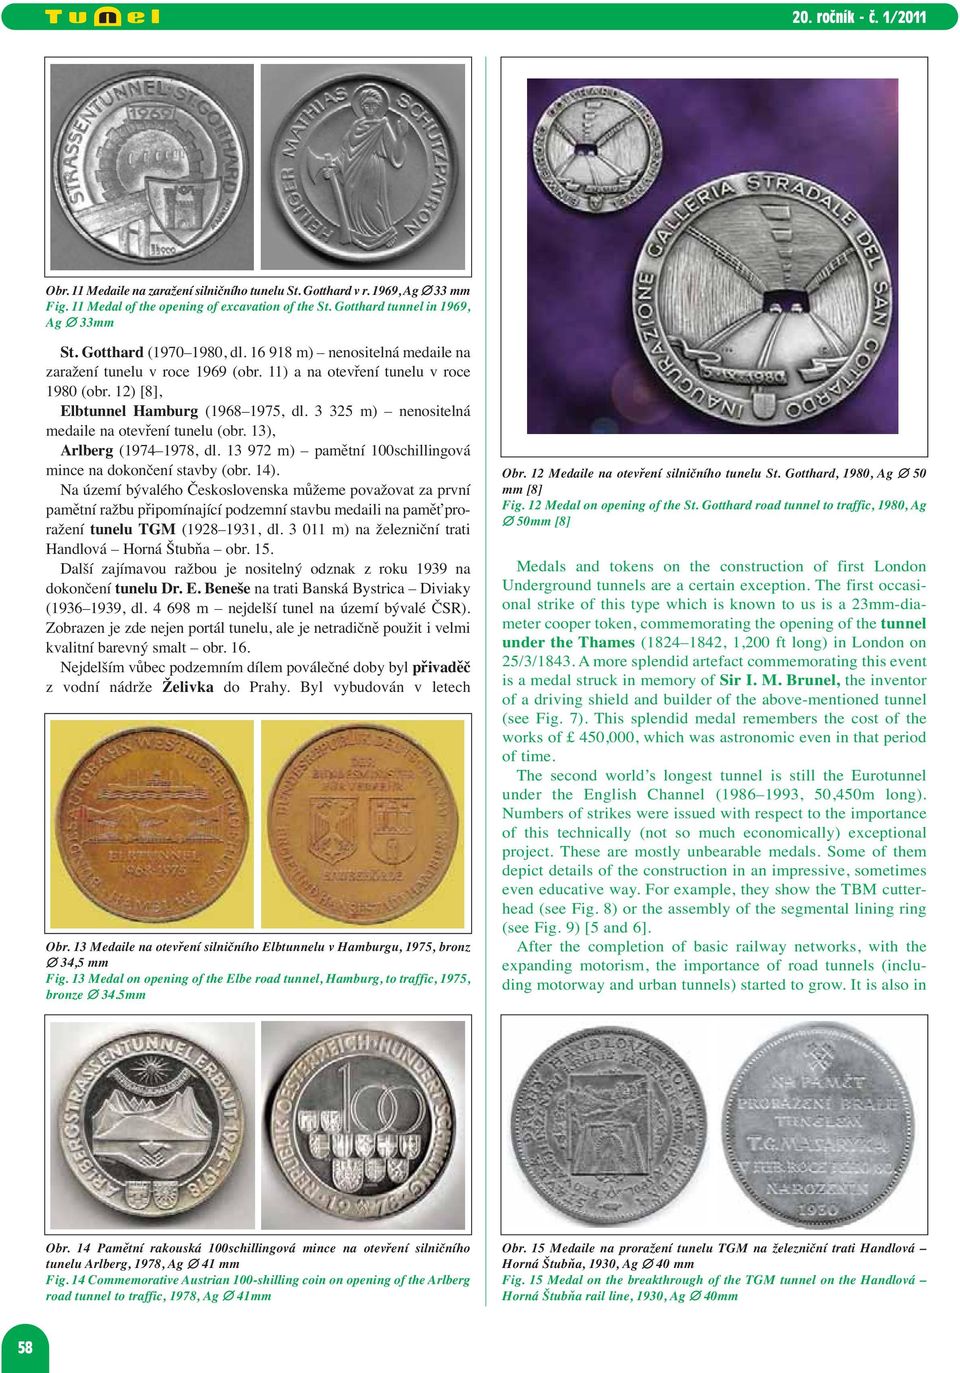 3 325 m) nenositelná medaile na otevření tunelu (obr. 13), Arlberg (1974 1978, dl. 13 972 m) pamětní 100schillingová mince na dokončení stavby (obr. 14).